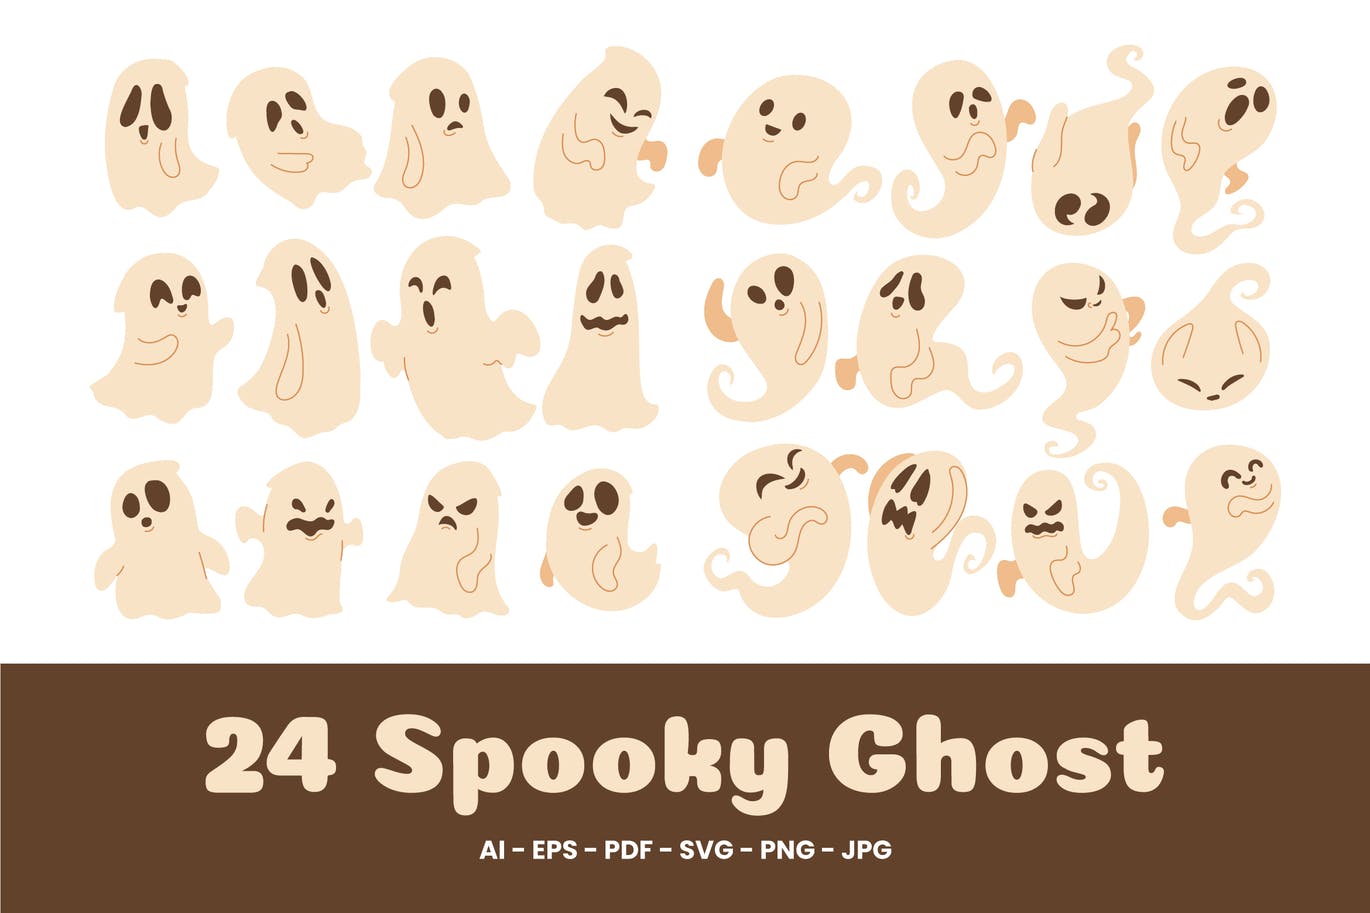 可爱的万圣节幽灵鬼脸插画素材 (AI,EPS,JPG,PDF,PNG,SVG)